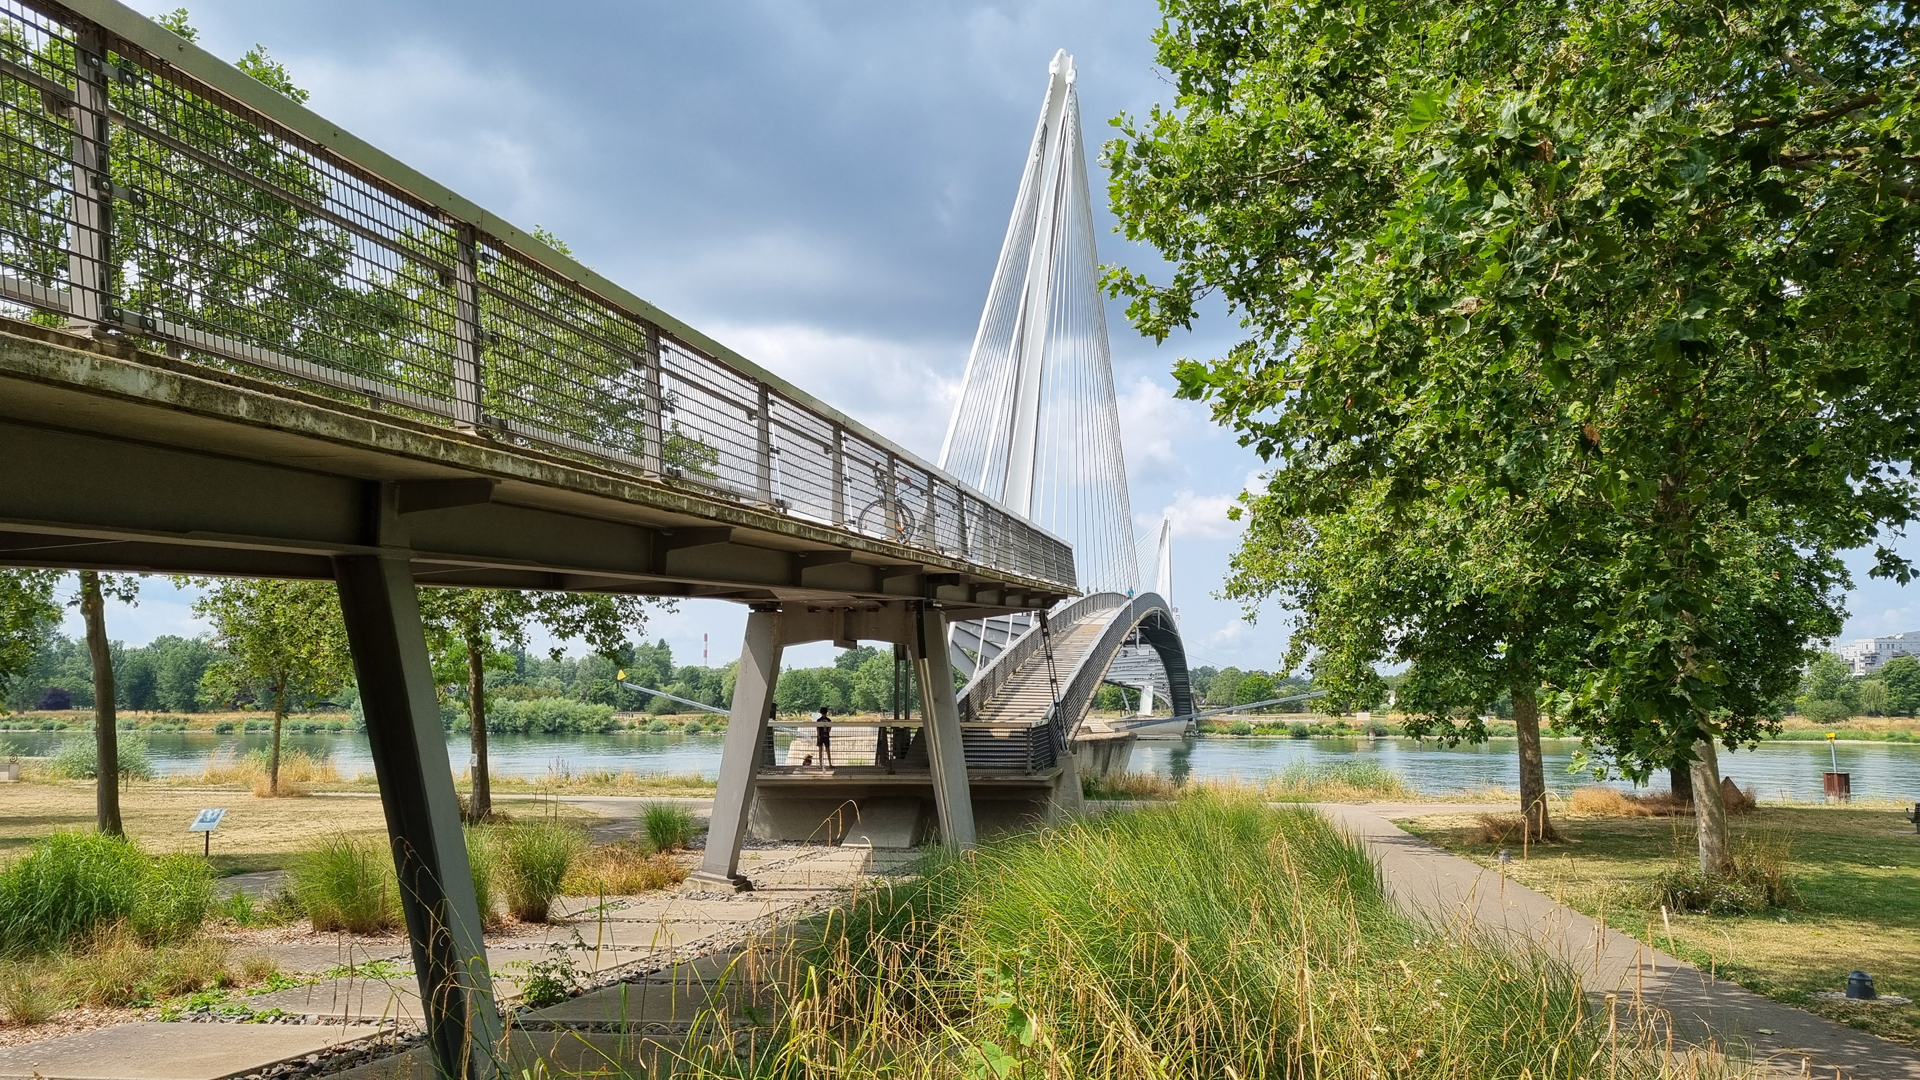 Fotos Deutschland, Kehl 01: Fußgänger- und Radfahrer-Brücke über den Rhein nach Straßburg